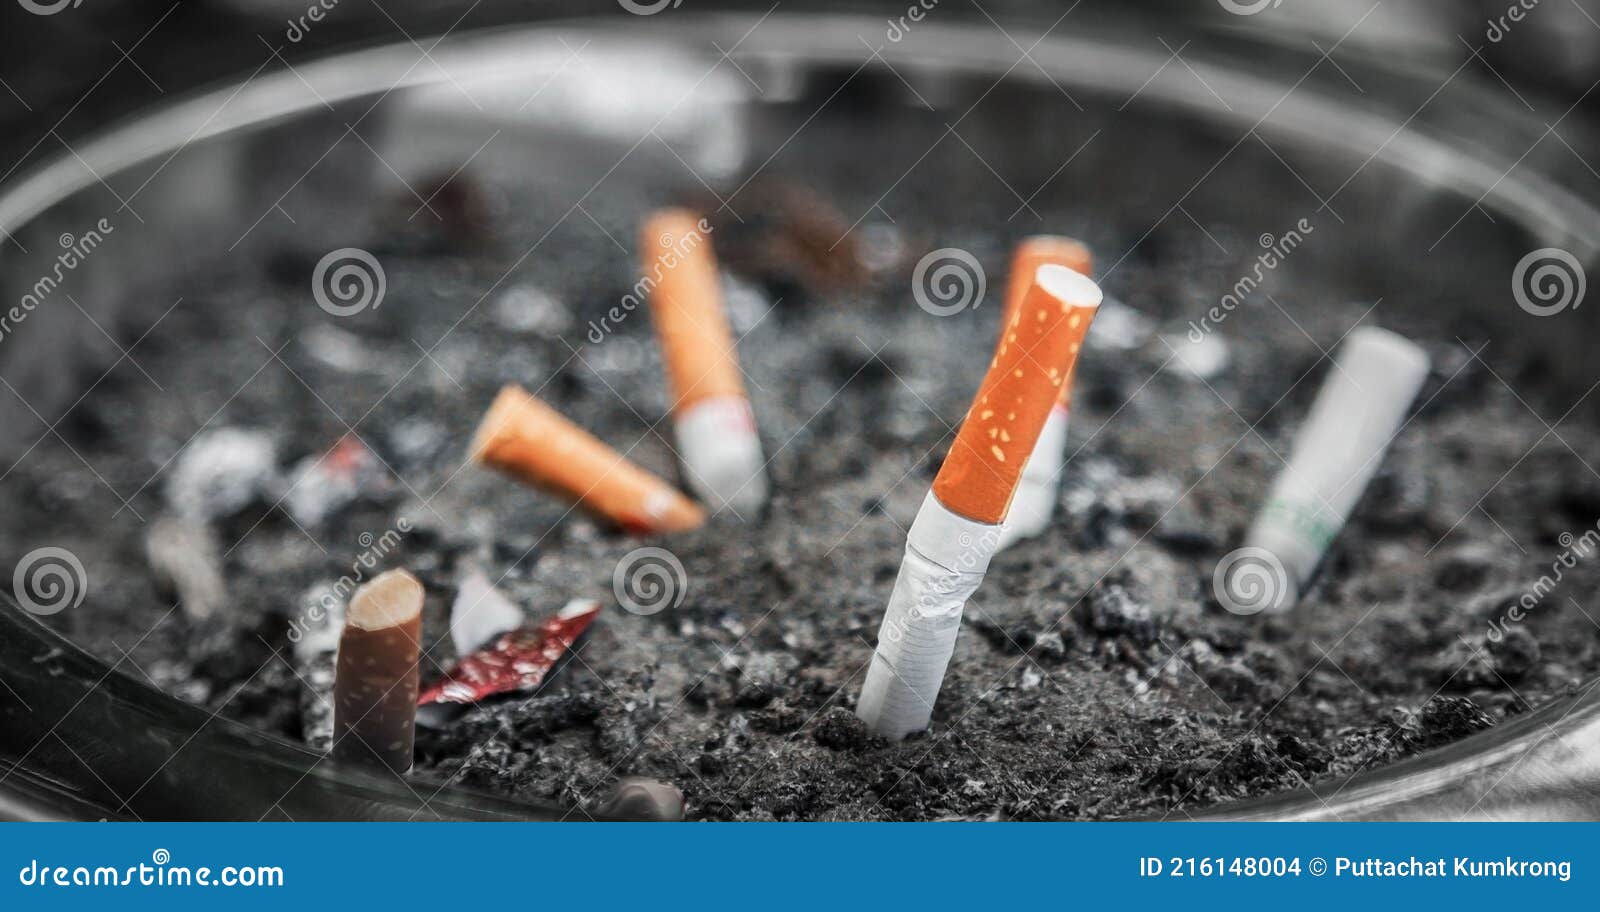 https://thumbs.dreamstime.com/z/unscharfer-aschenbecher-mit-vielen-zigarettenstummeln-rauchen-ist-gesundheitsgef%C3%A4hrdend-zigarettenrauch-welt-kein-tabak-tag-216148004.jpg